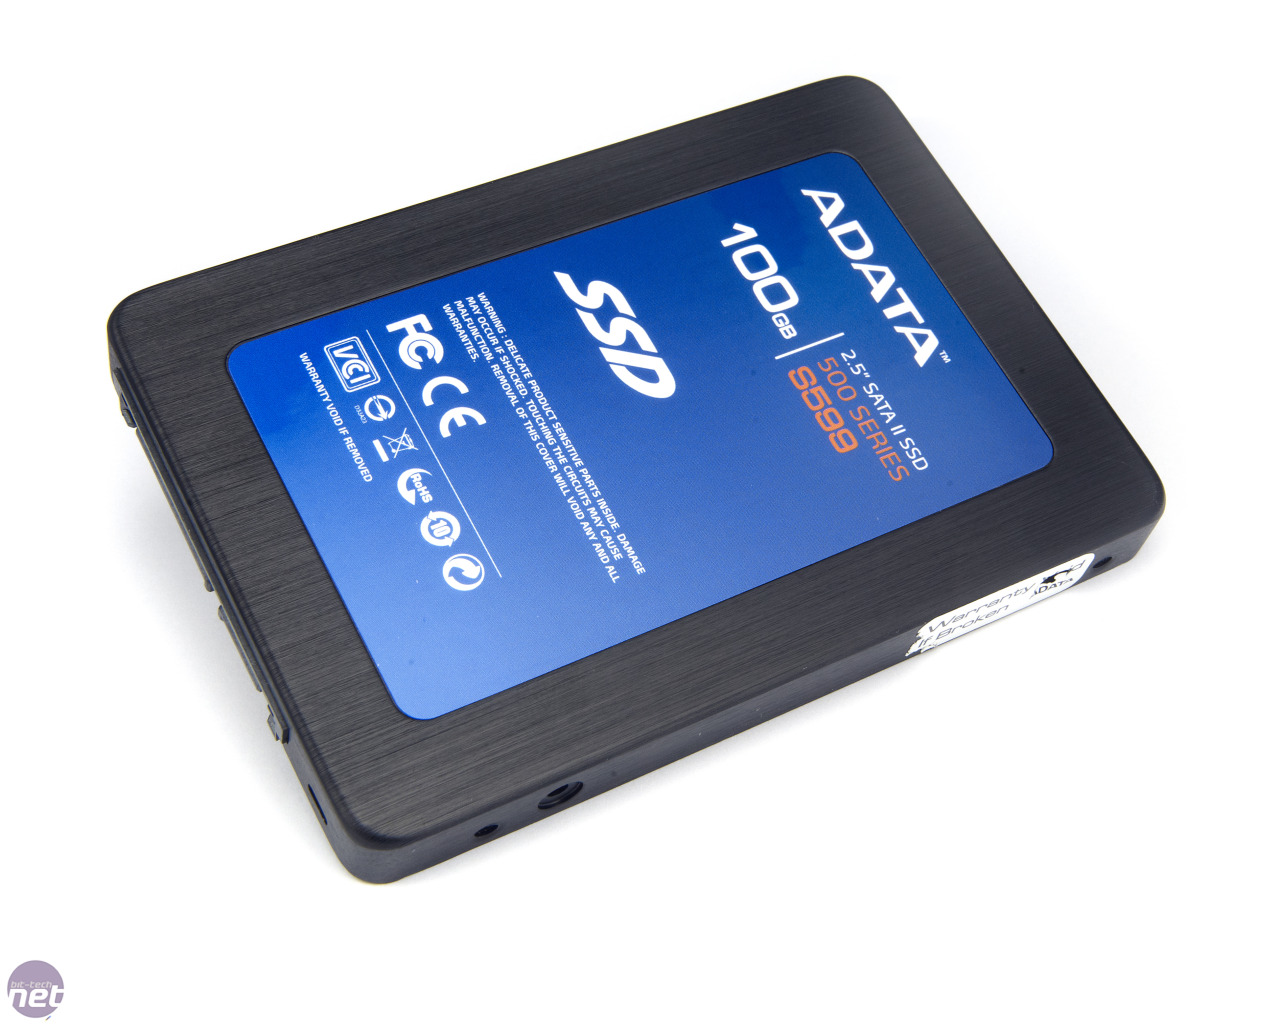 Adata ssd toolbox. Toolbox программа SSD ADATA. Внешний диск SSD A-data se880. SSD Toolbox dedicated for SSD products. SSD ADATA 250 тех обмен.